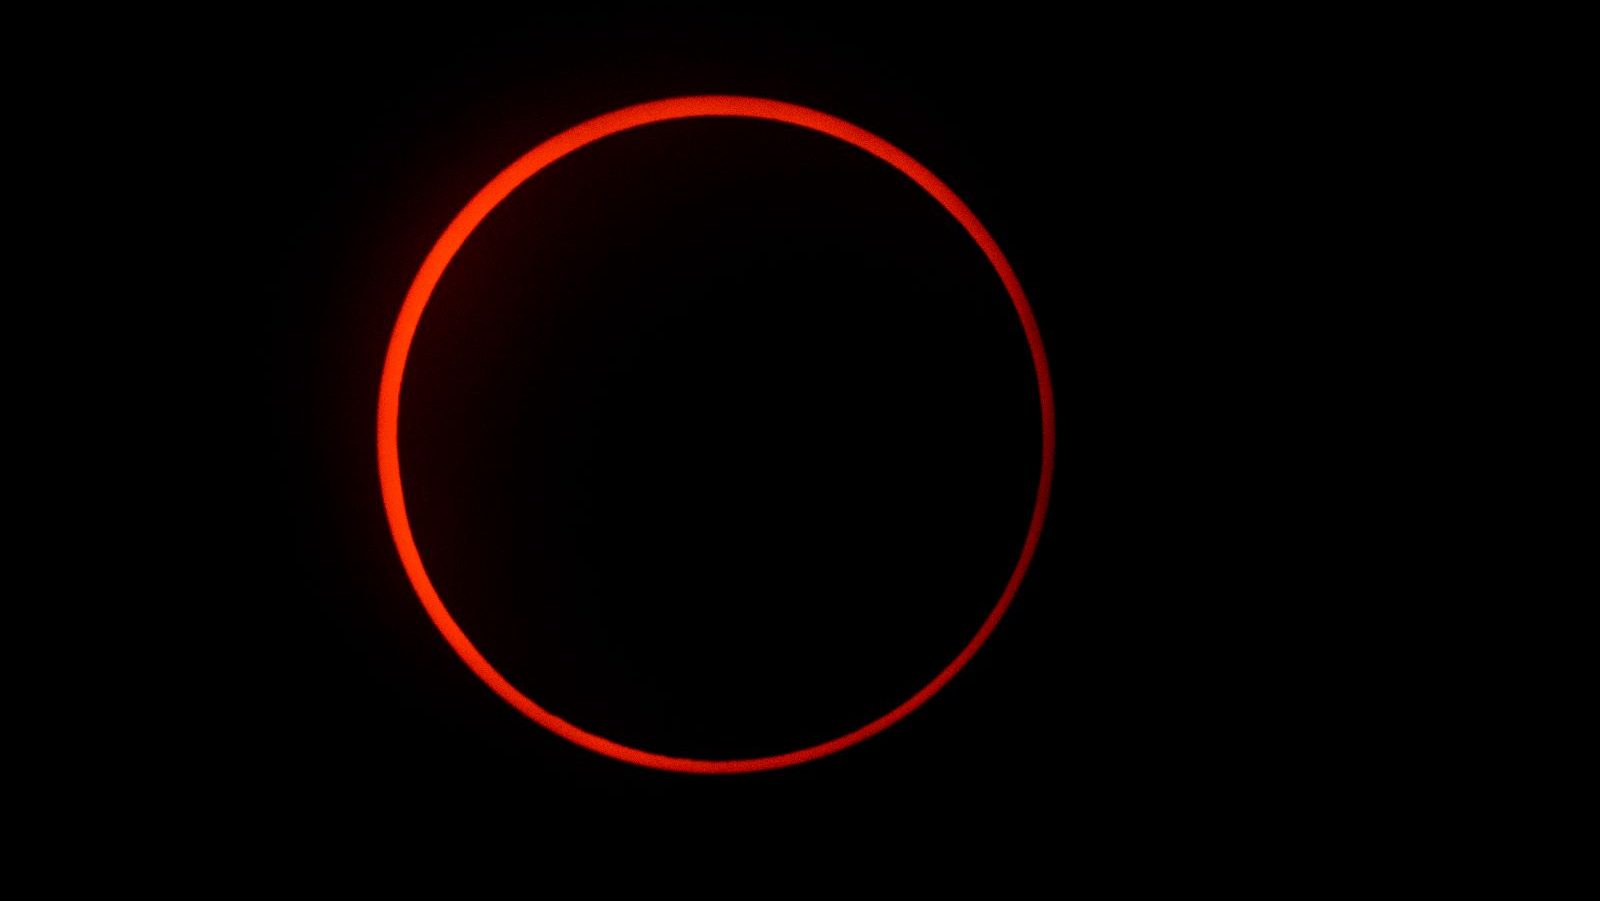 Siguiente Eclipse solar - Figure 2